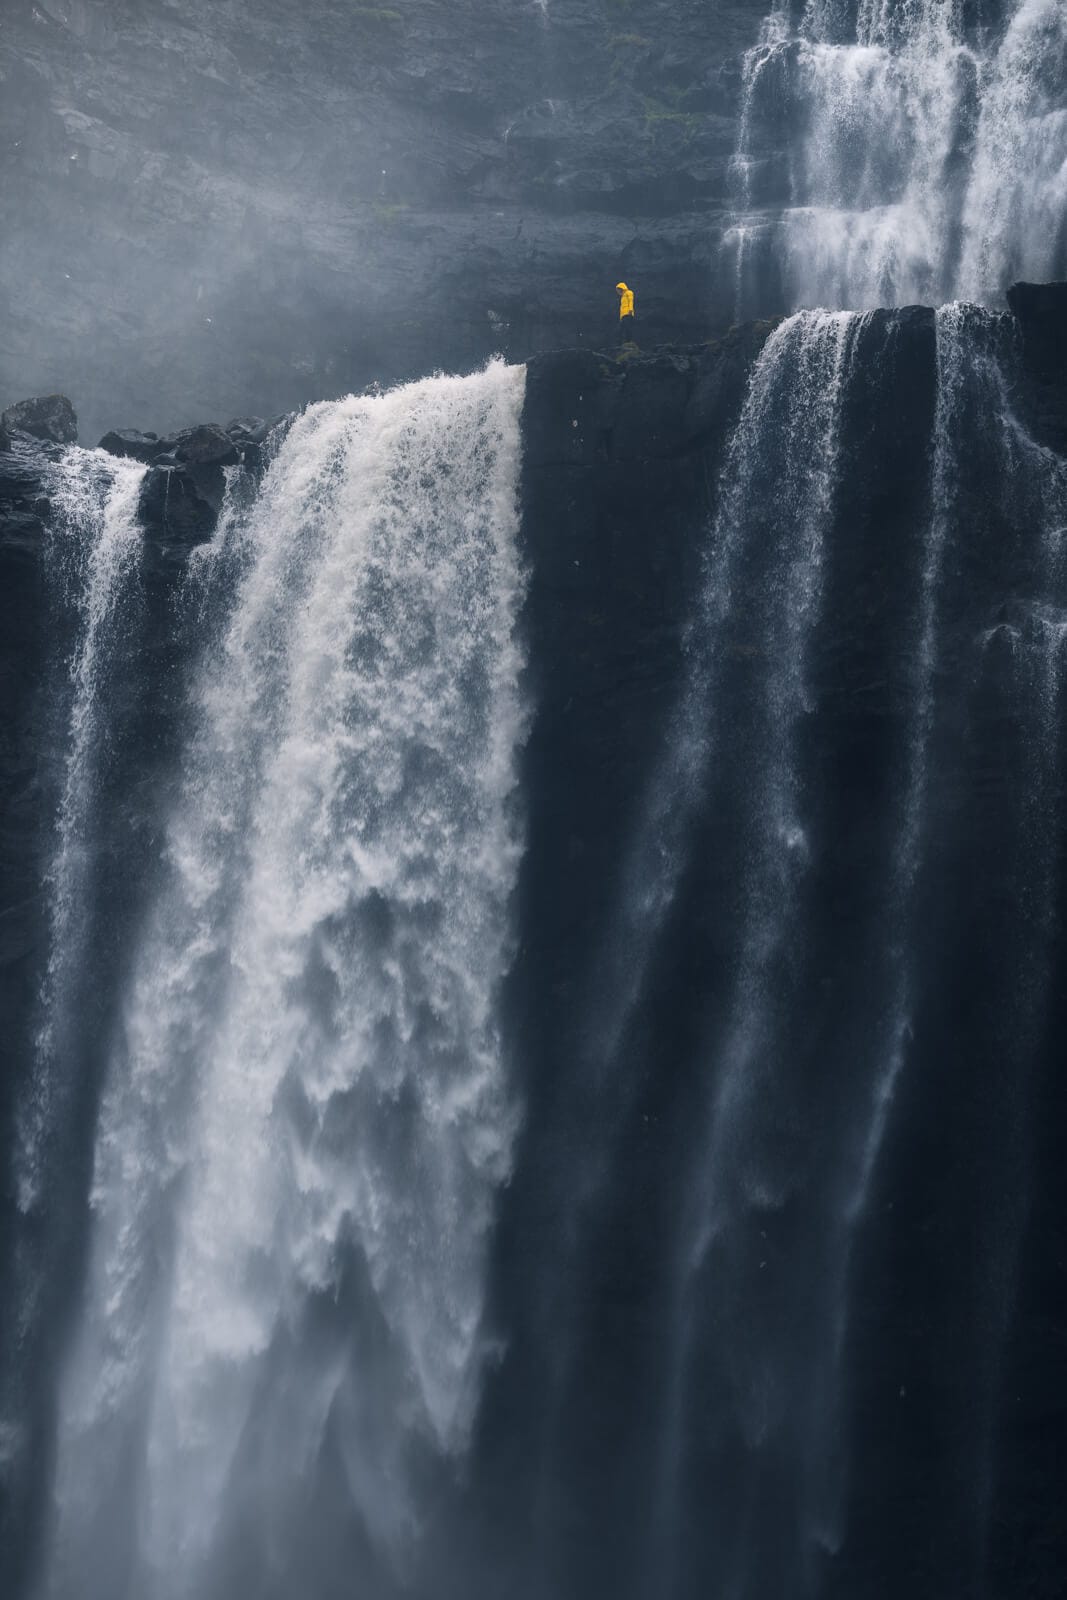 Plan très gris, bord de falaise et chutes d'eau à écume blanche. Une personne se tient au bord, avec un ciré jaune dont la couleur ressort face au roches.